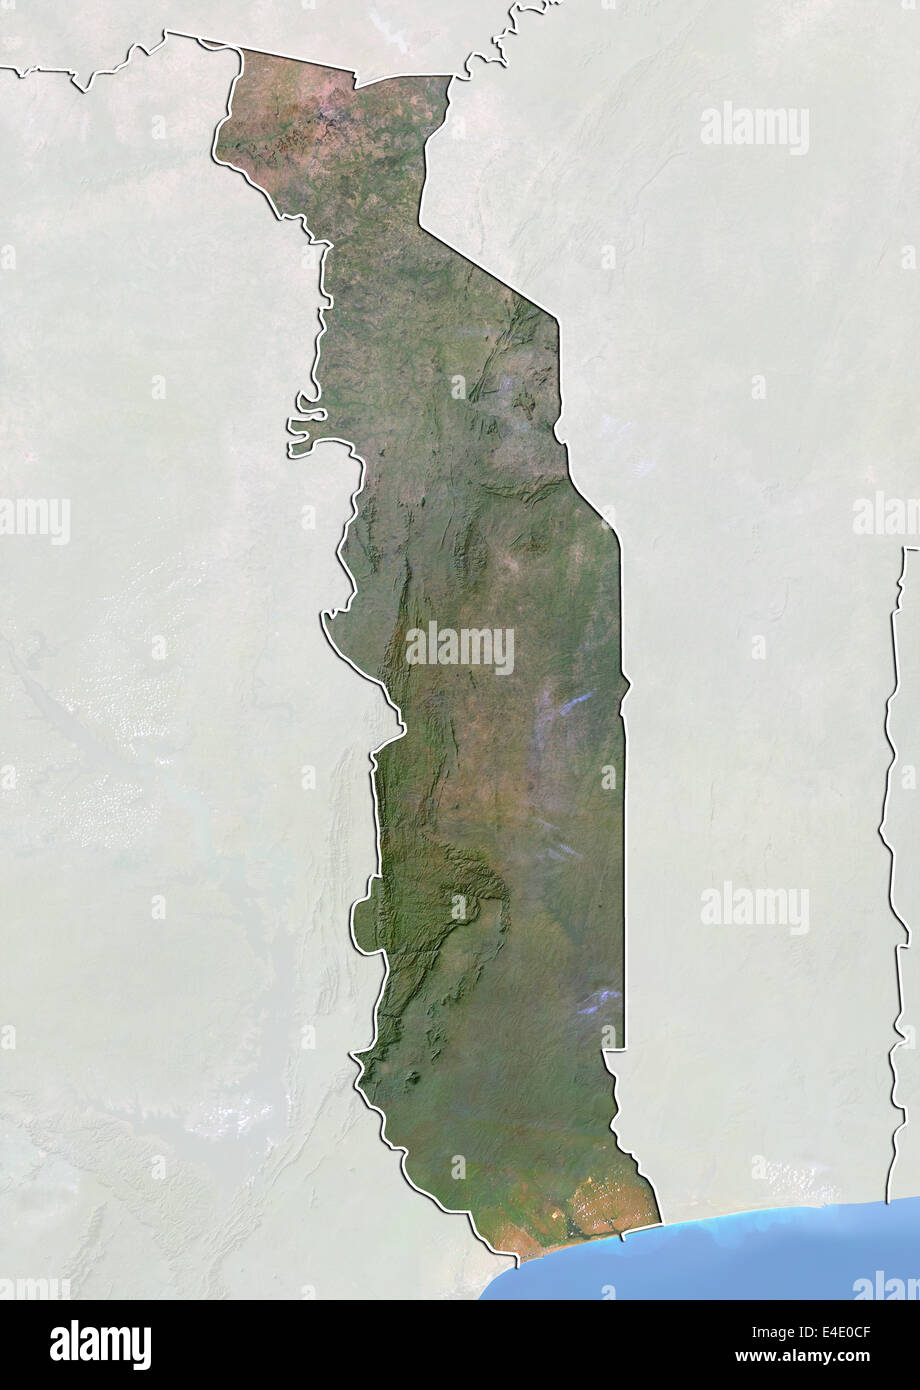 Le Togo, image satellite avec effet de choc, avec bordure et masque Banque D'Images